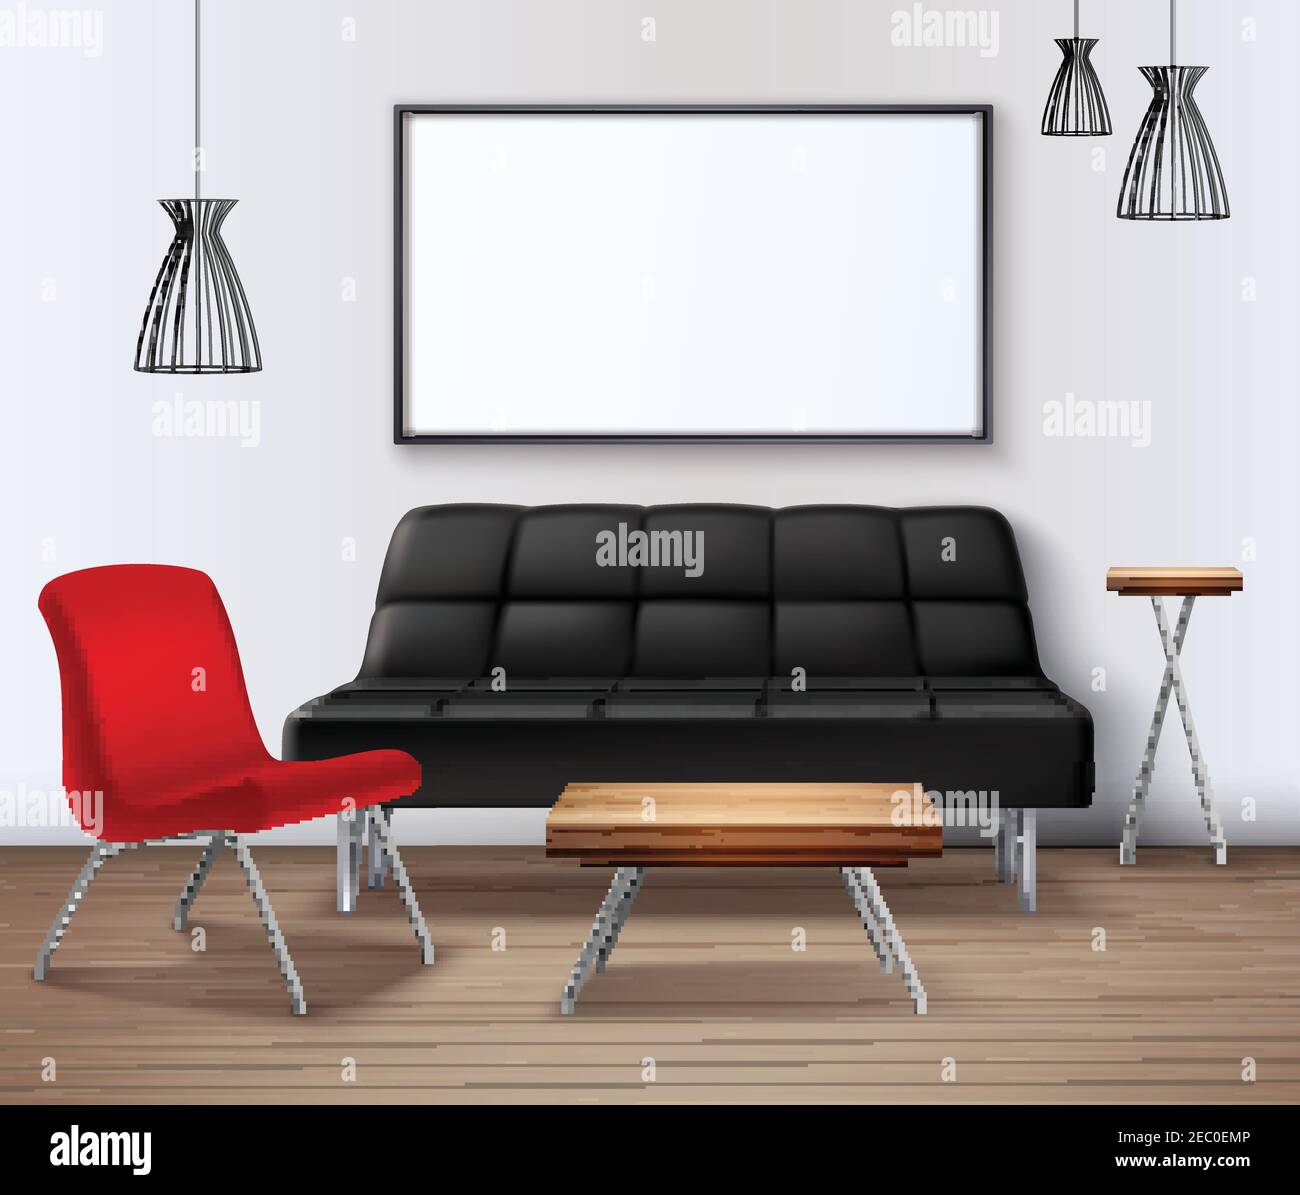 Décoration intérieure moderne maquette d'affiche réaliste avec canapé-café tableau blanc et illustration vectorielle rouge fauteuil Illustration de Vecteur